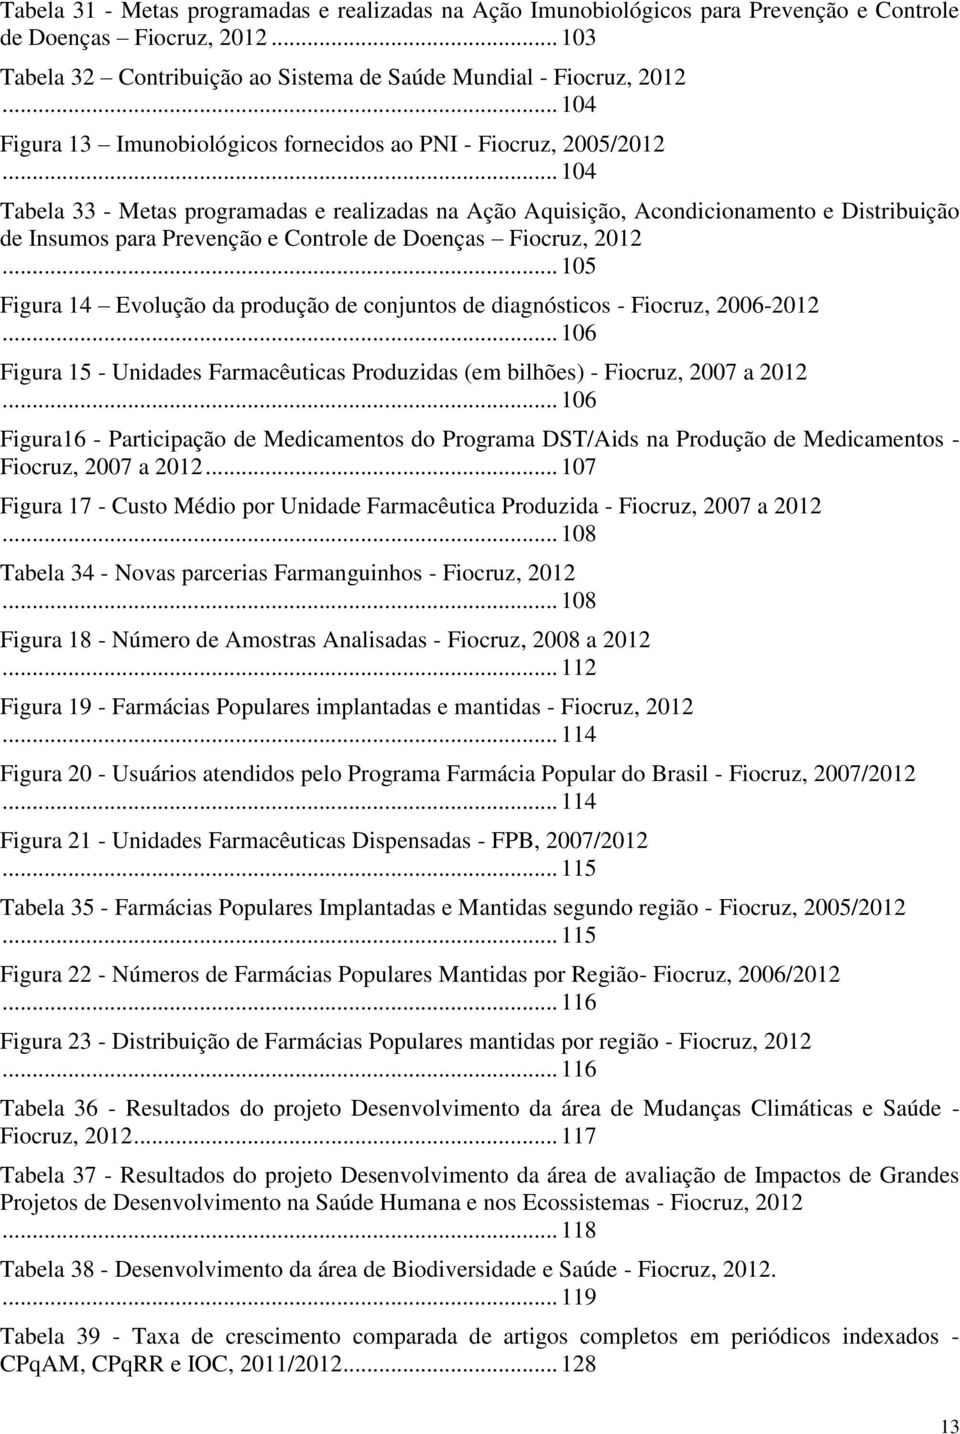 .. 104 Tabela 33 - Metas programadas e realizadas na Ação Aquisição, Acondicionamento e Distribuição de Insumos para Prevenção e Controle de Doenças Fiocruz, 2012.